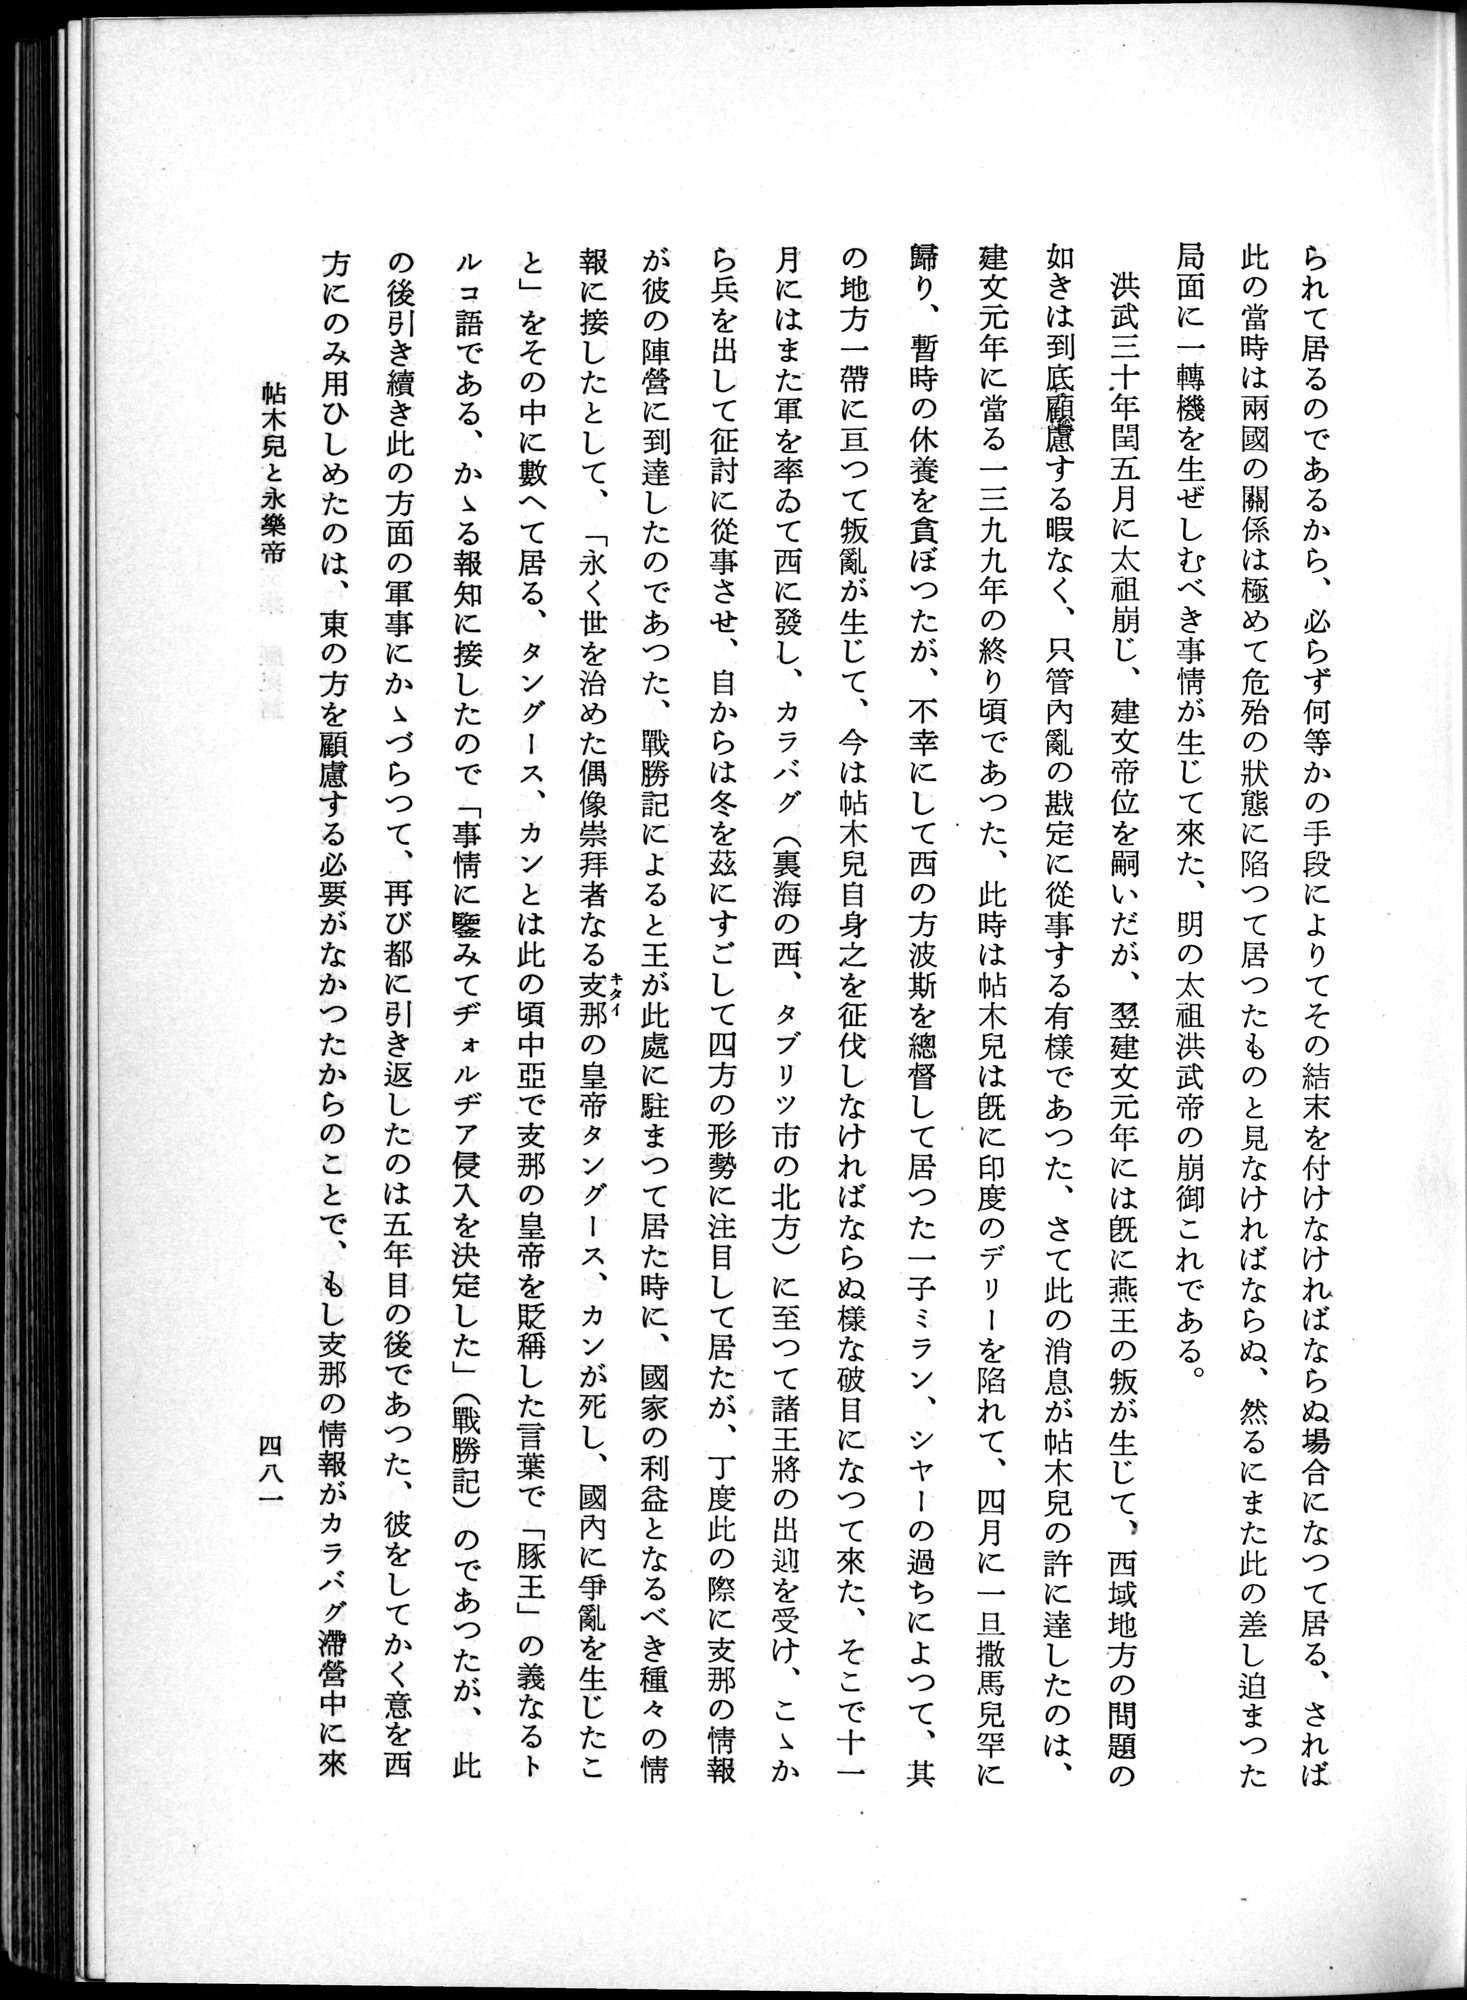 羽田博士史学論文集 : vol.1 / Page 519 (Grayscale High Resolution Image)